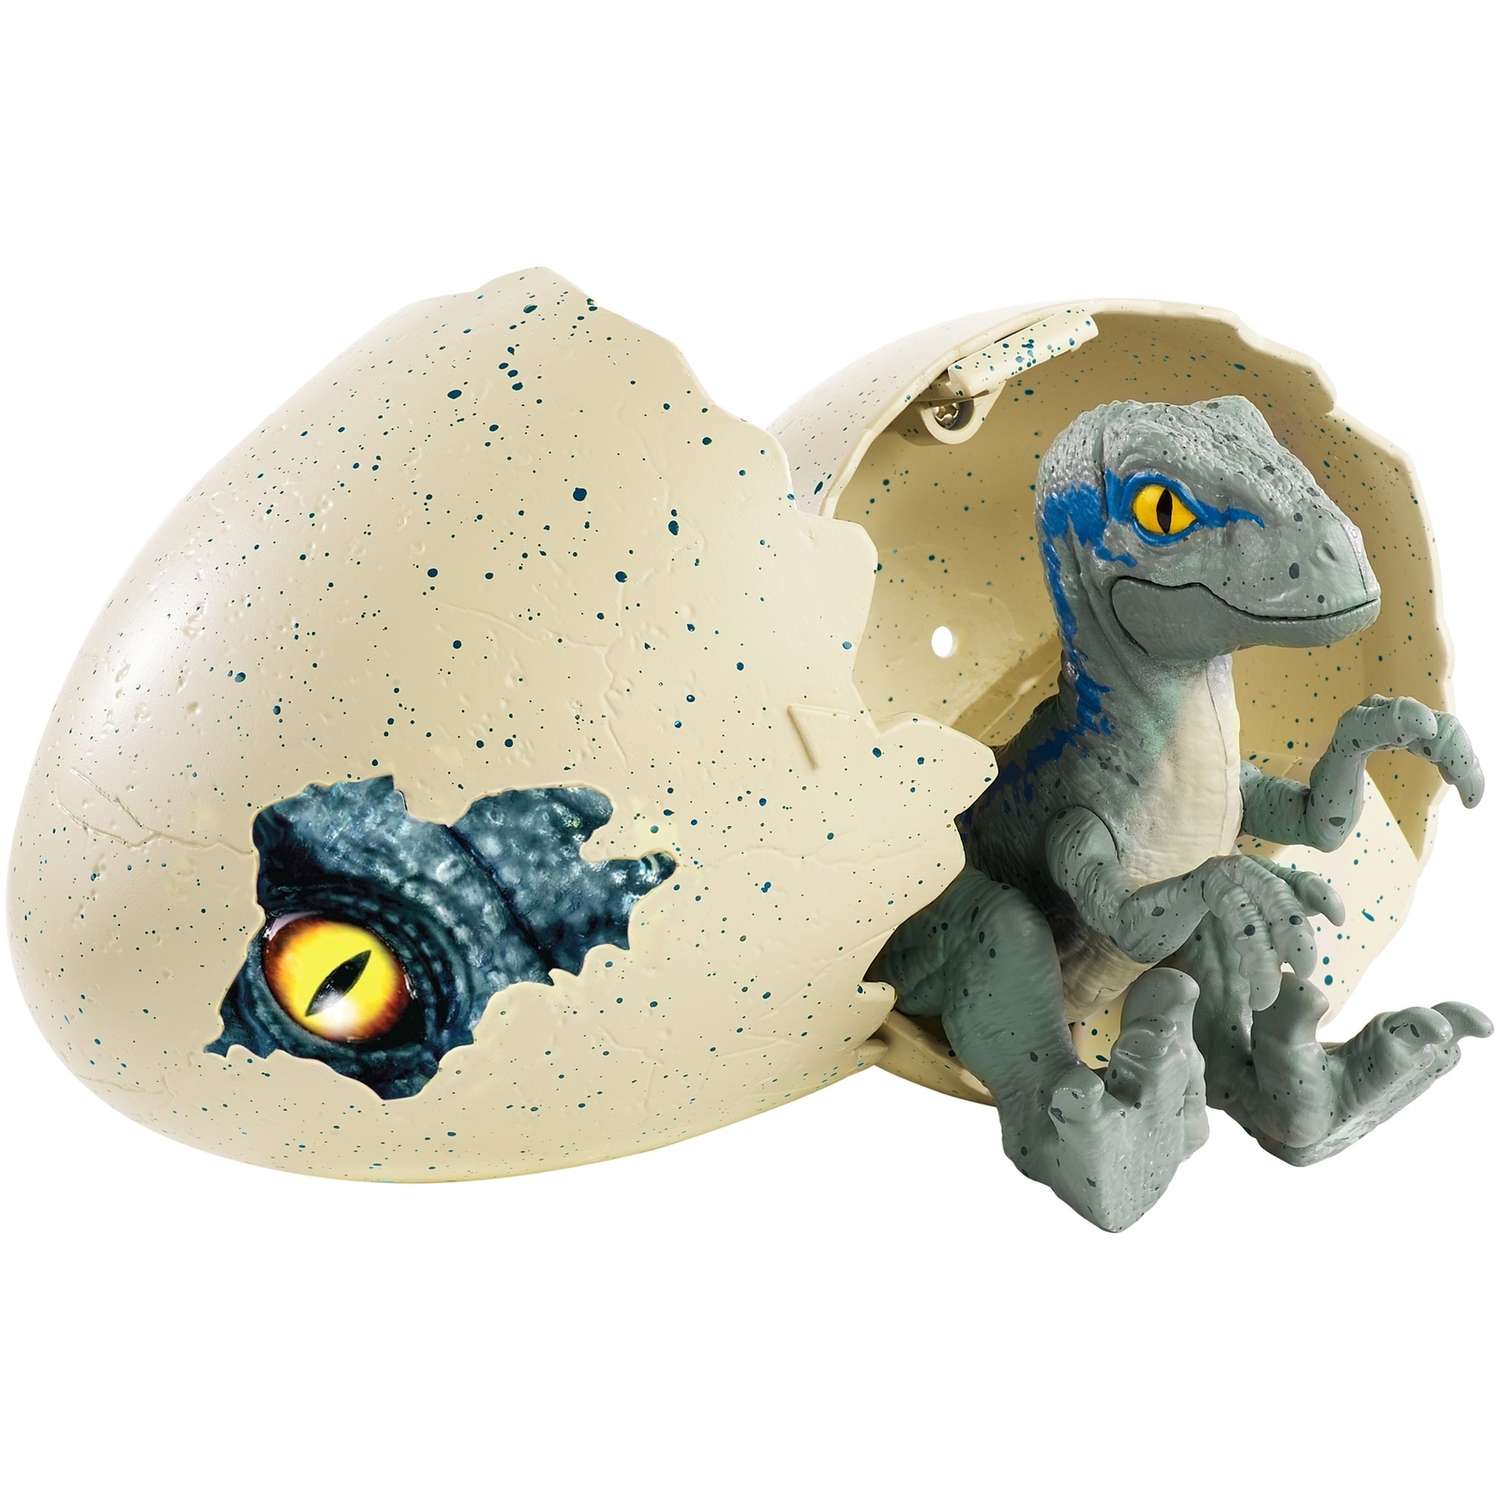 Яйца динозавров купить. Фигурка Jurassic World "динозавр в яйце". Fmb92. Фигурка Jurassic World яйцо. Яйцо динозавра игрушка Jurassic World. Мир Юрского периода яйцо динозавра.